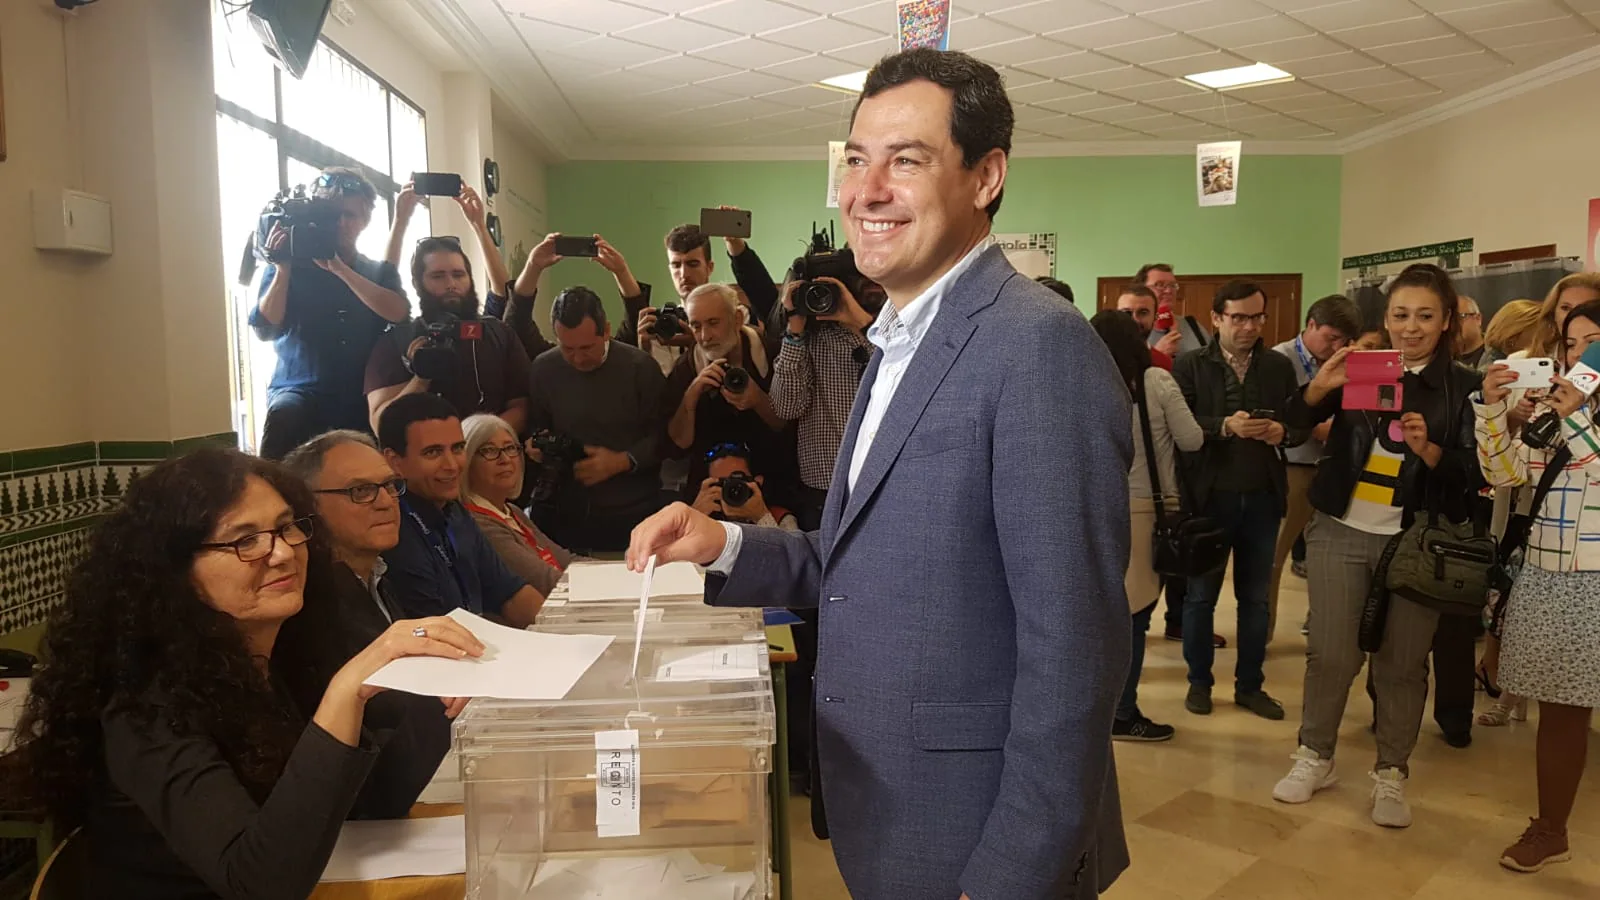 El presidente de la Junta de Andalucía, Juanma Moreno, votando en el colegio Sagrado Corazón.